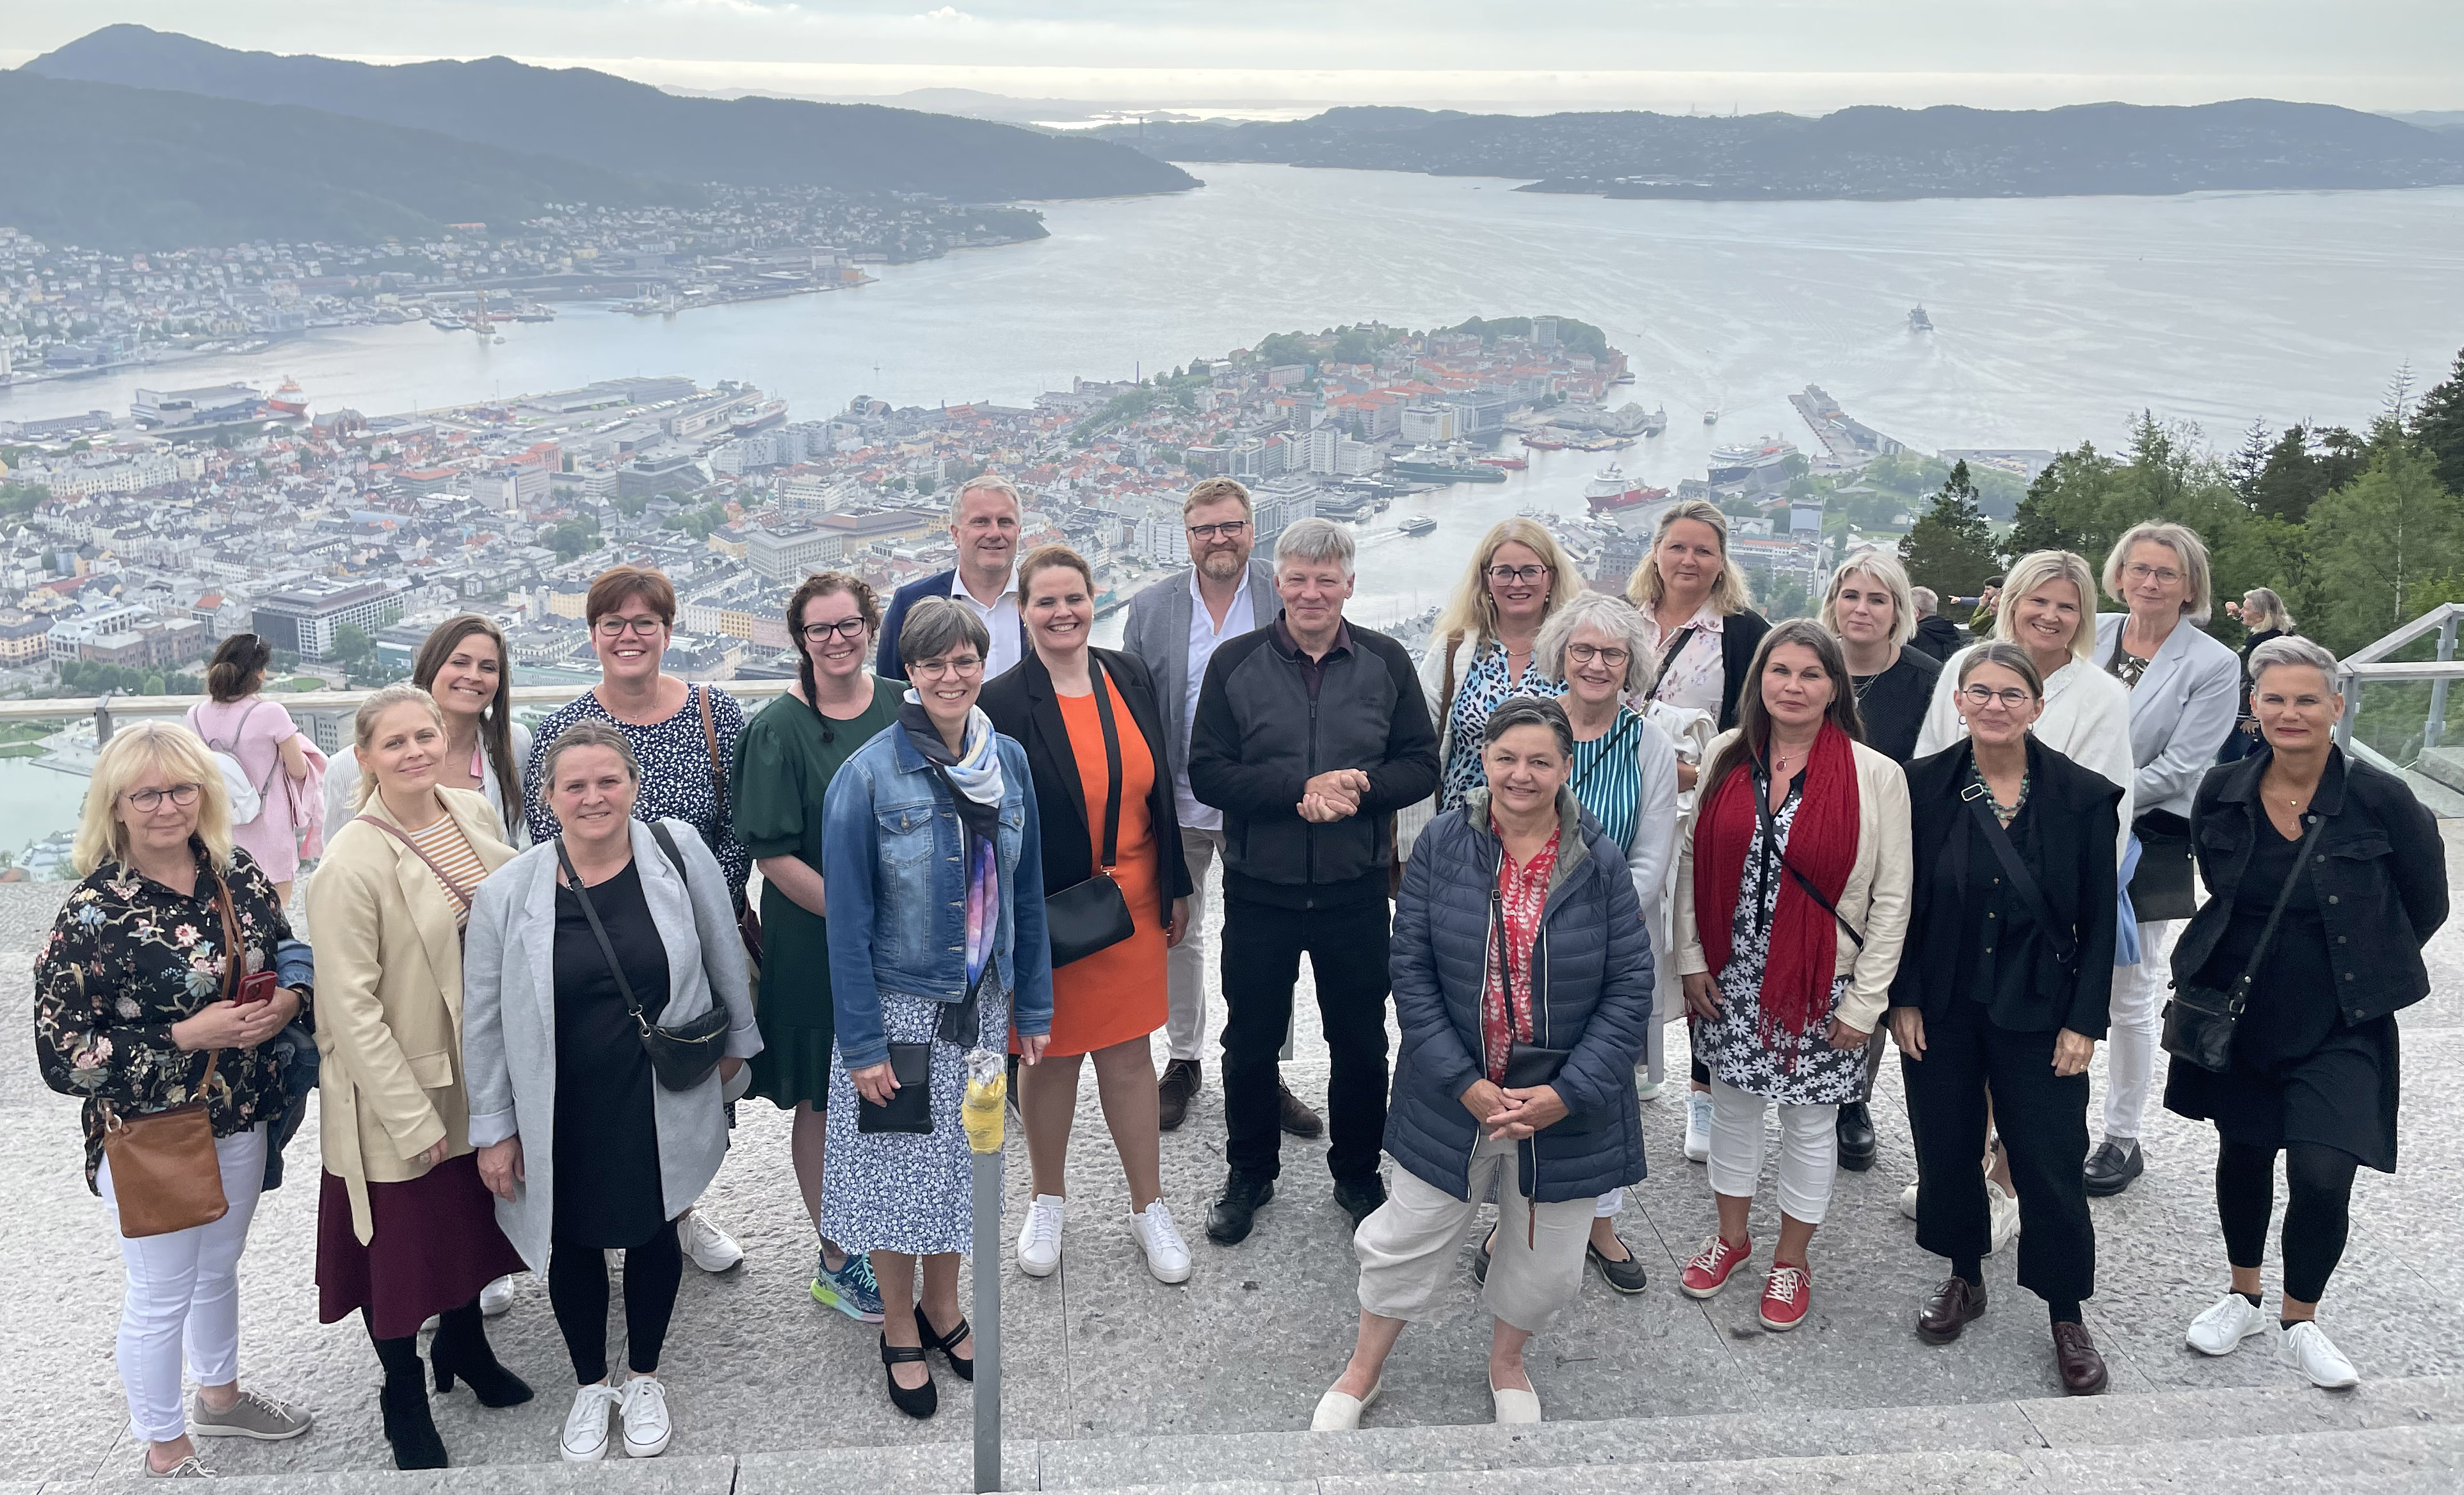  Deltagarna i Ledarforum fotograferade utomhus med utsikt över Bergen, Norge.